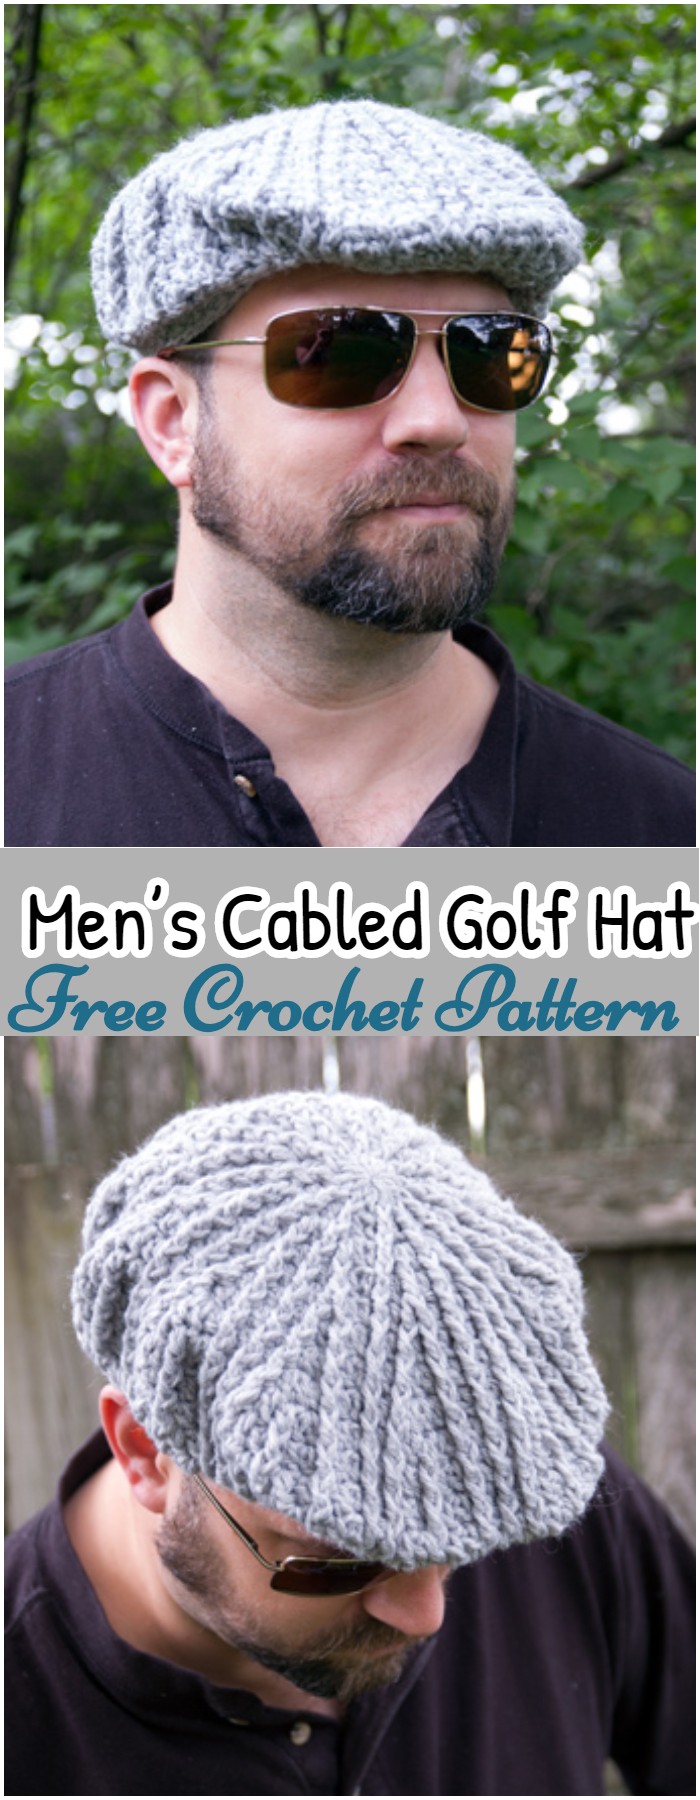 Crochet Men’s Cabled Golf Cap